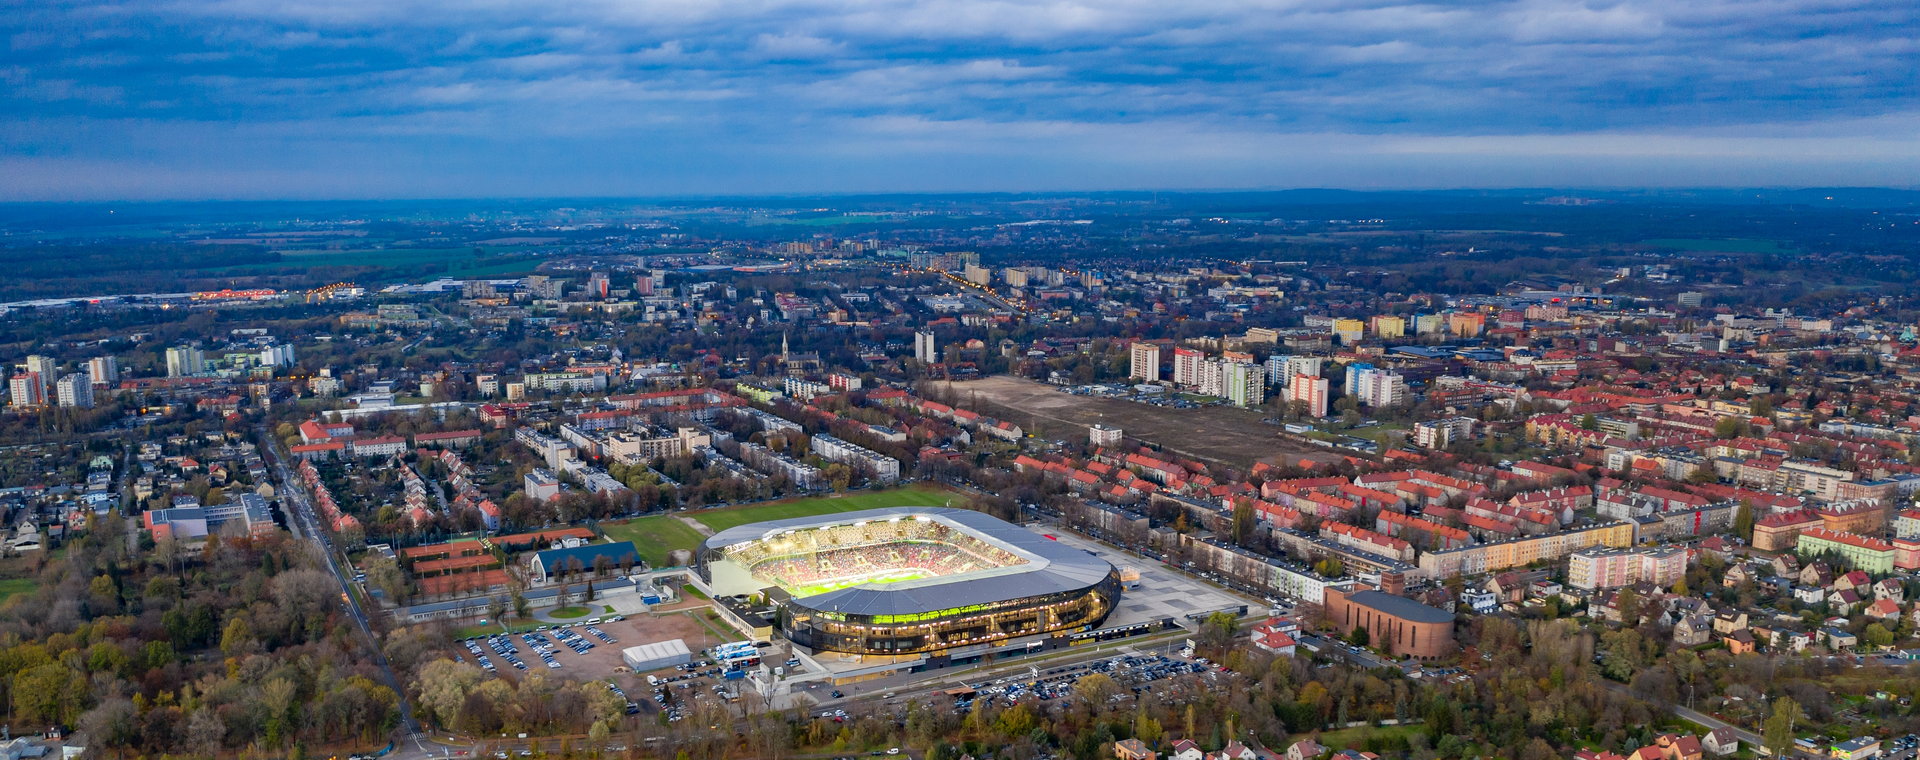 Zabrze/ stadion Arena Zabrze